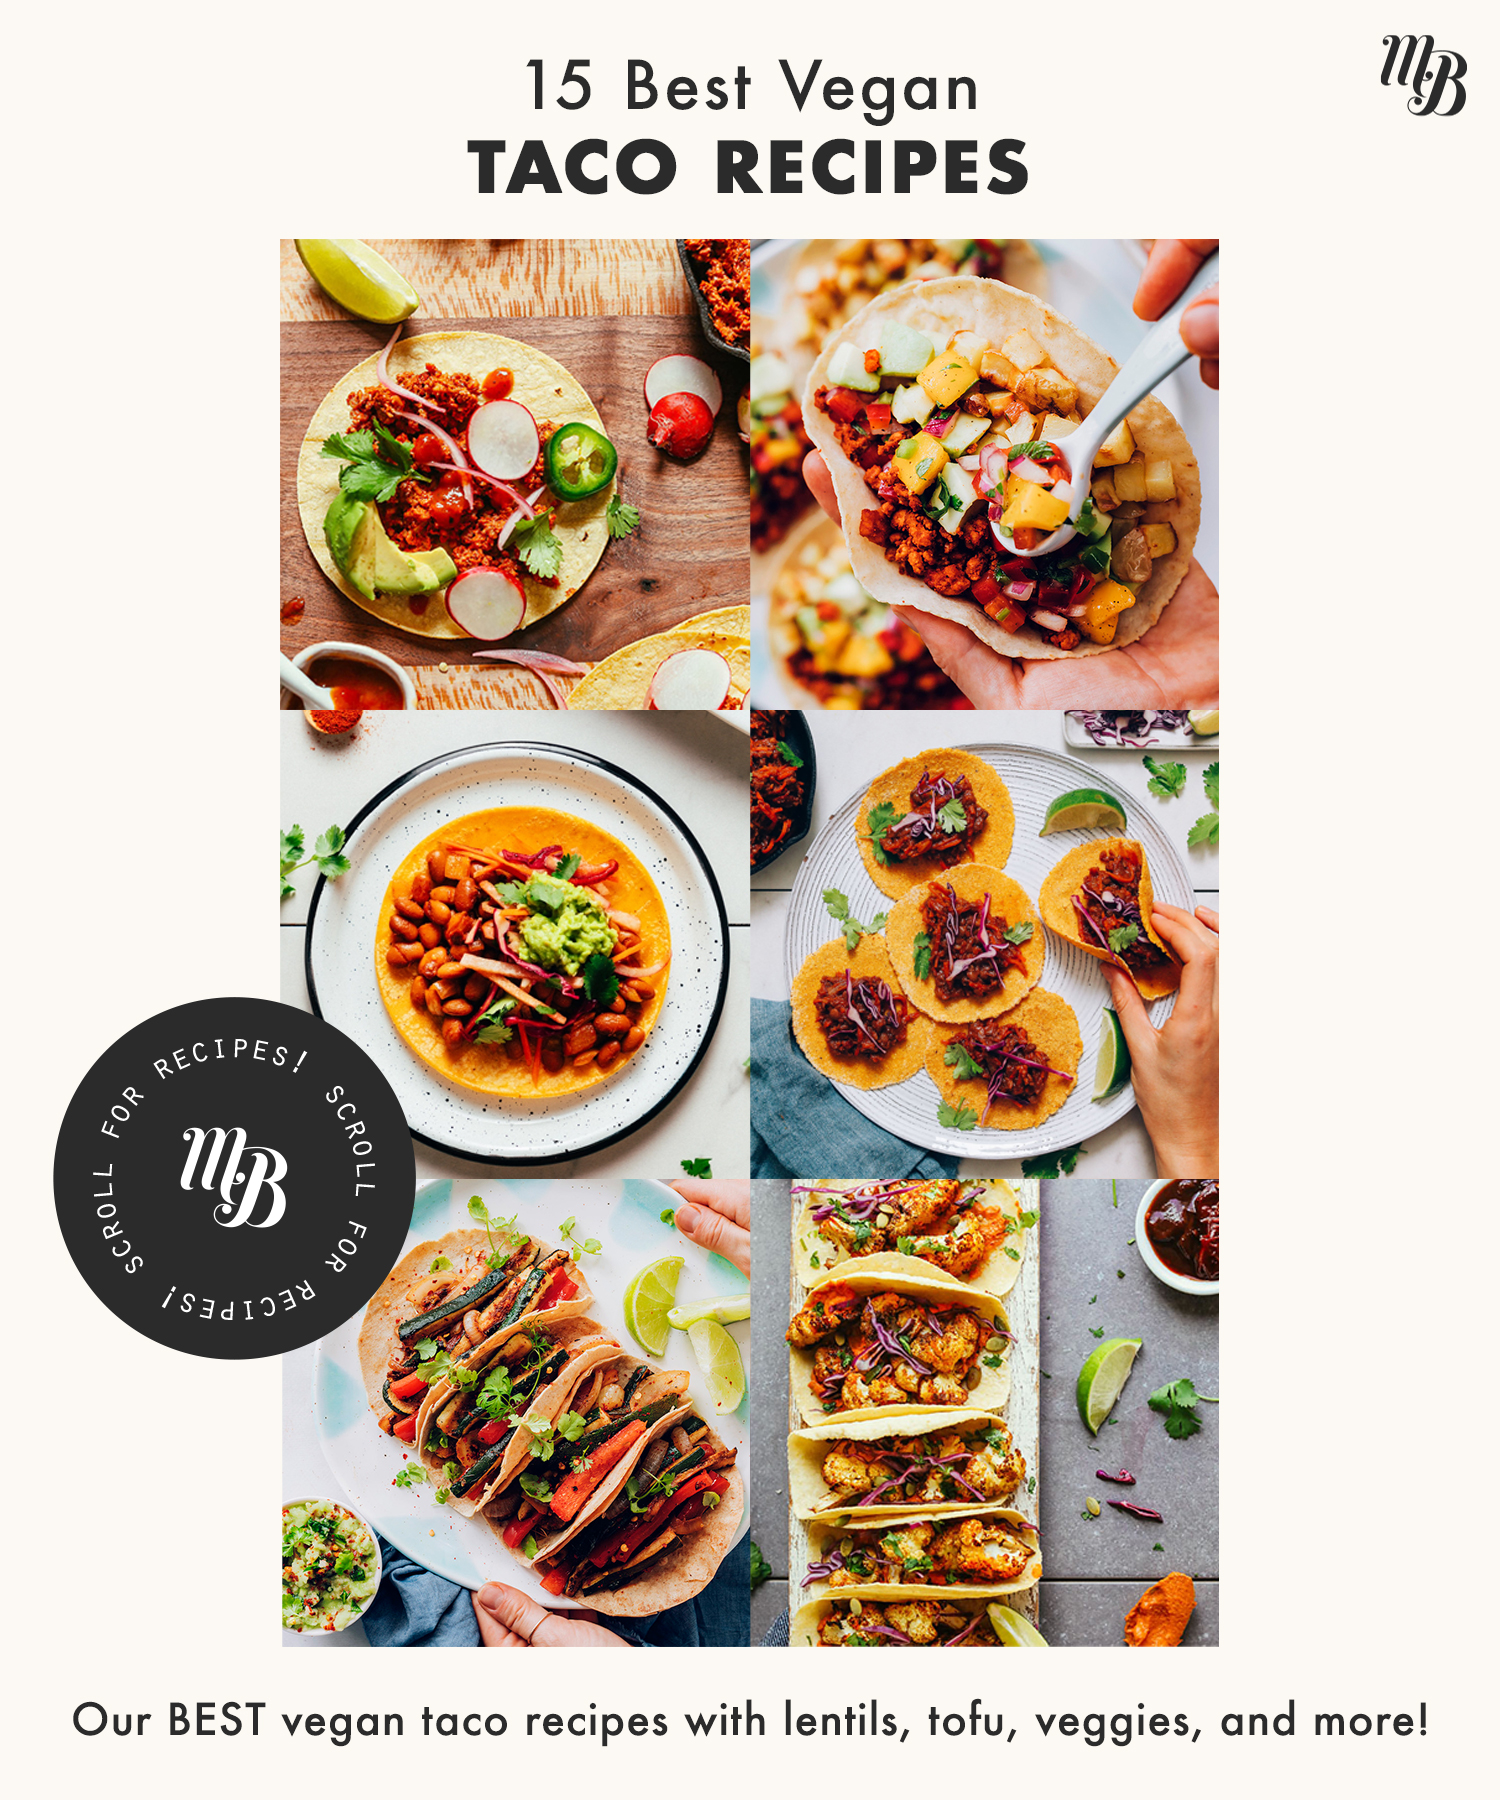 Assortment of vegan taco recipes